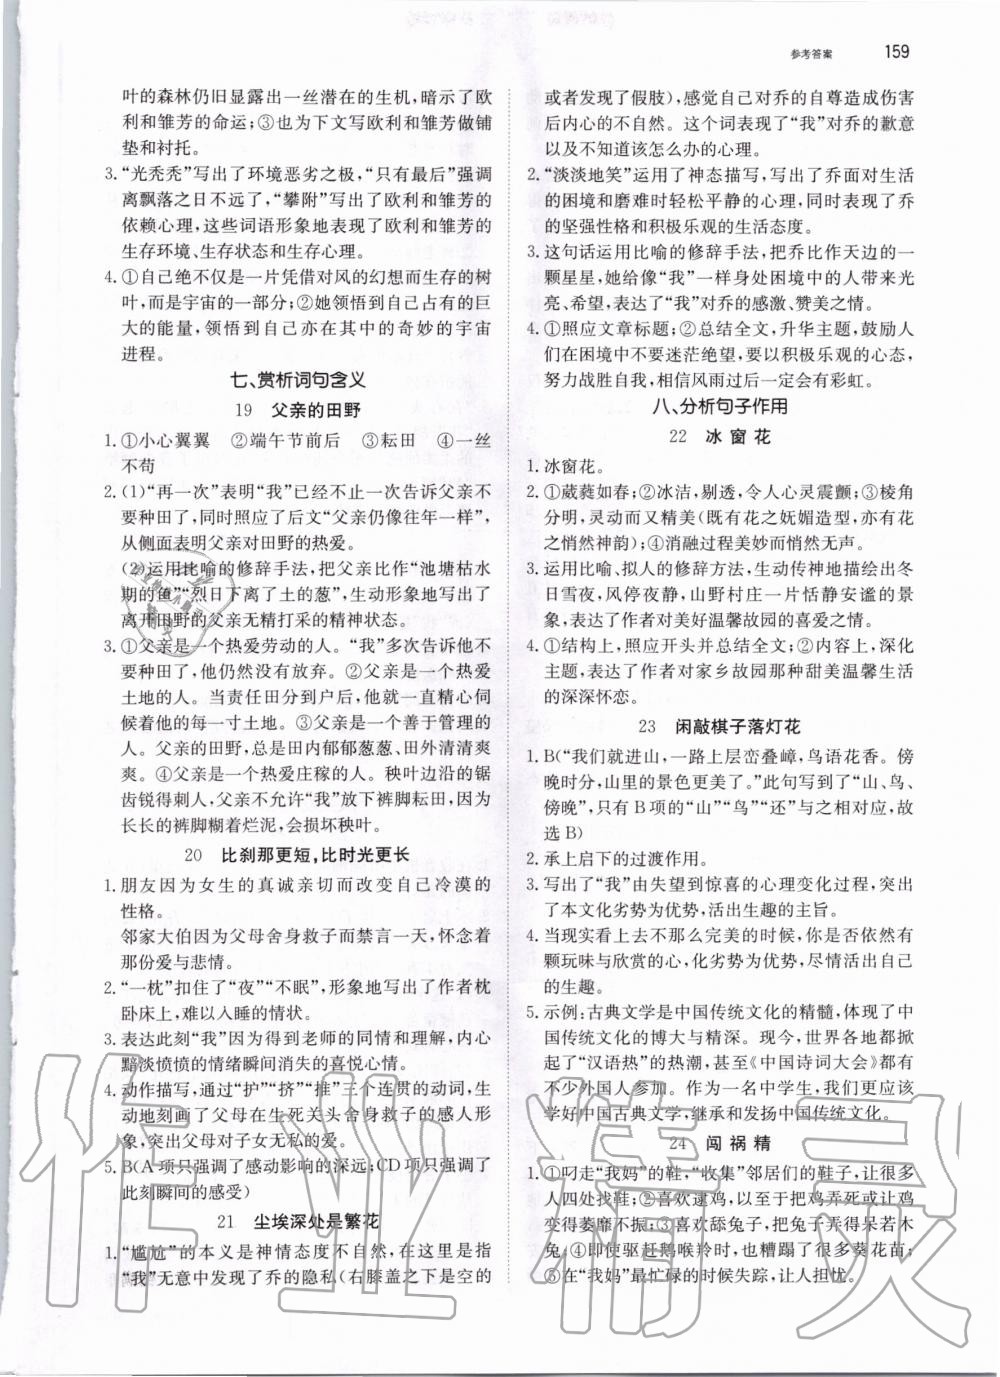 2019年锐阅读初中语文阅读训练5合1中考 第5页